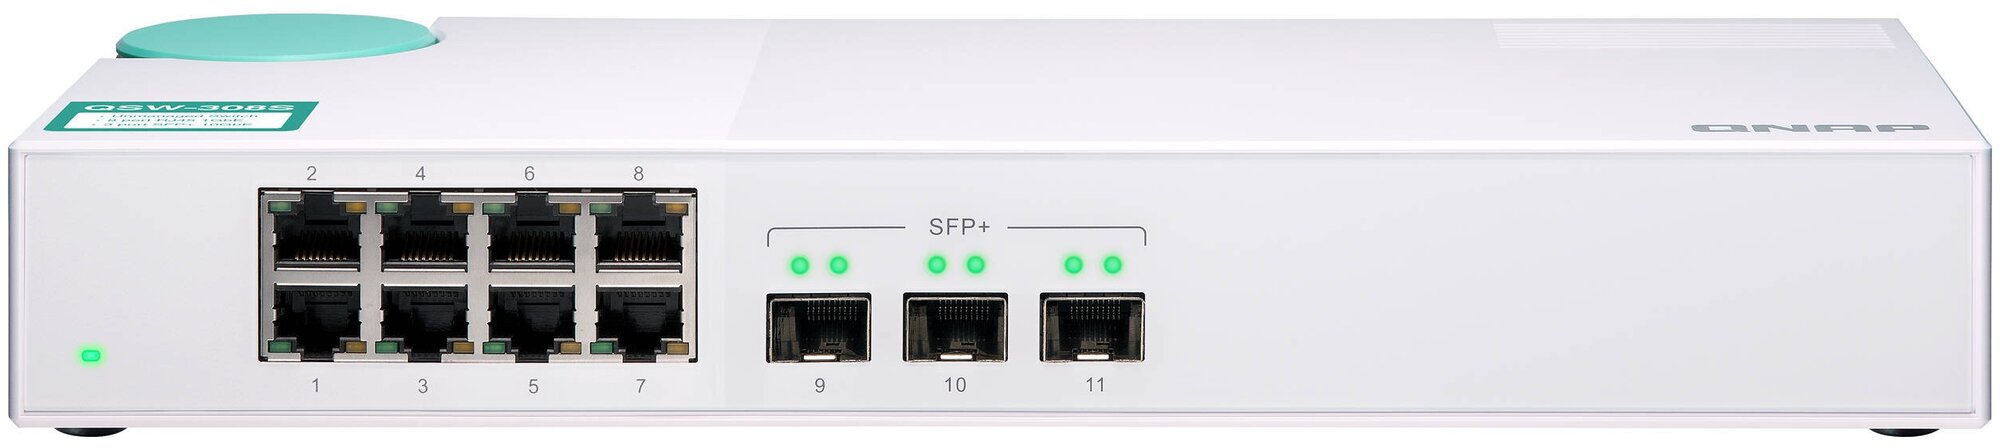 Коммутатор QNAP QSW-308S неуправляемый 3 порта 10 Гбит/с SFP+, 8 портов 1 Гбит/с RJ-45, пропускная способность до 76 Гбит/с, поддержка JumboFrame.